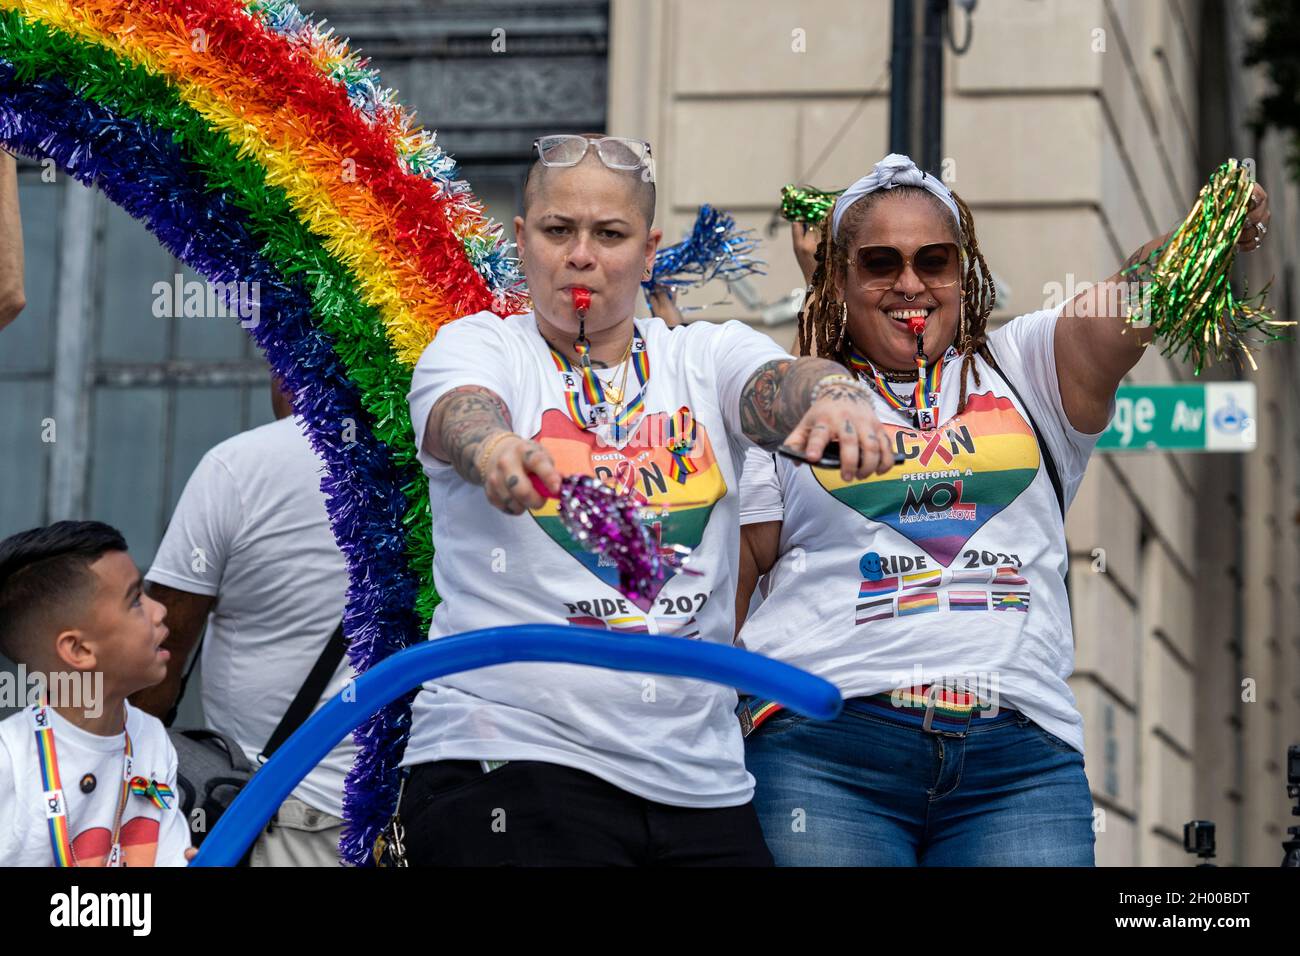 gay pride orlando fl 2018